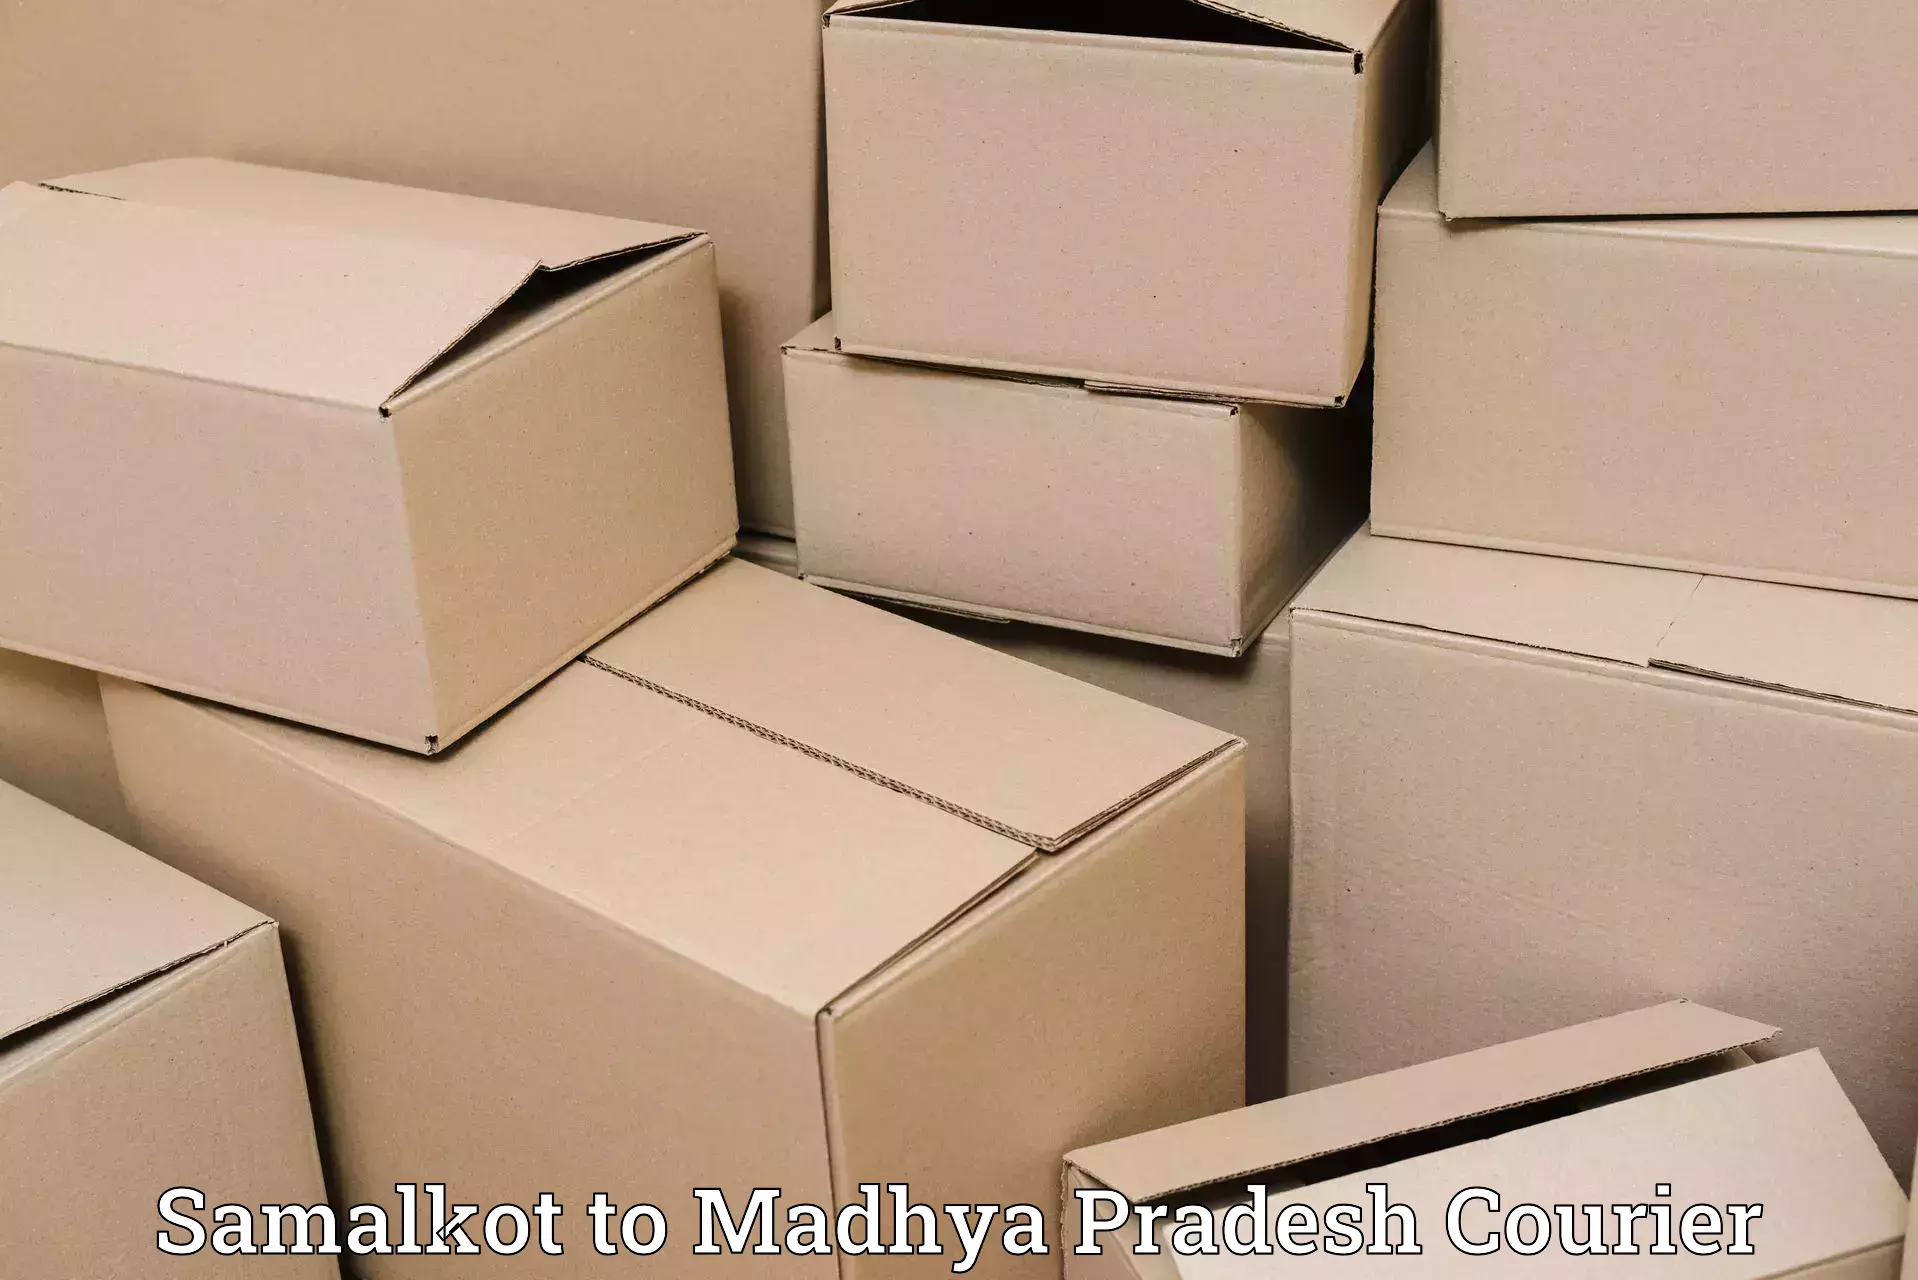 Luggage delivery network Samalkot to Madhya Pradesh